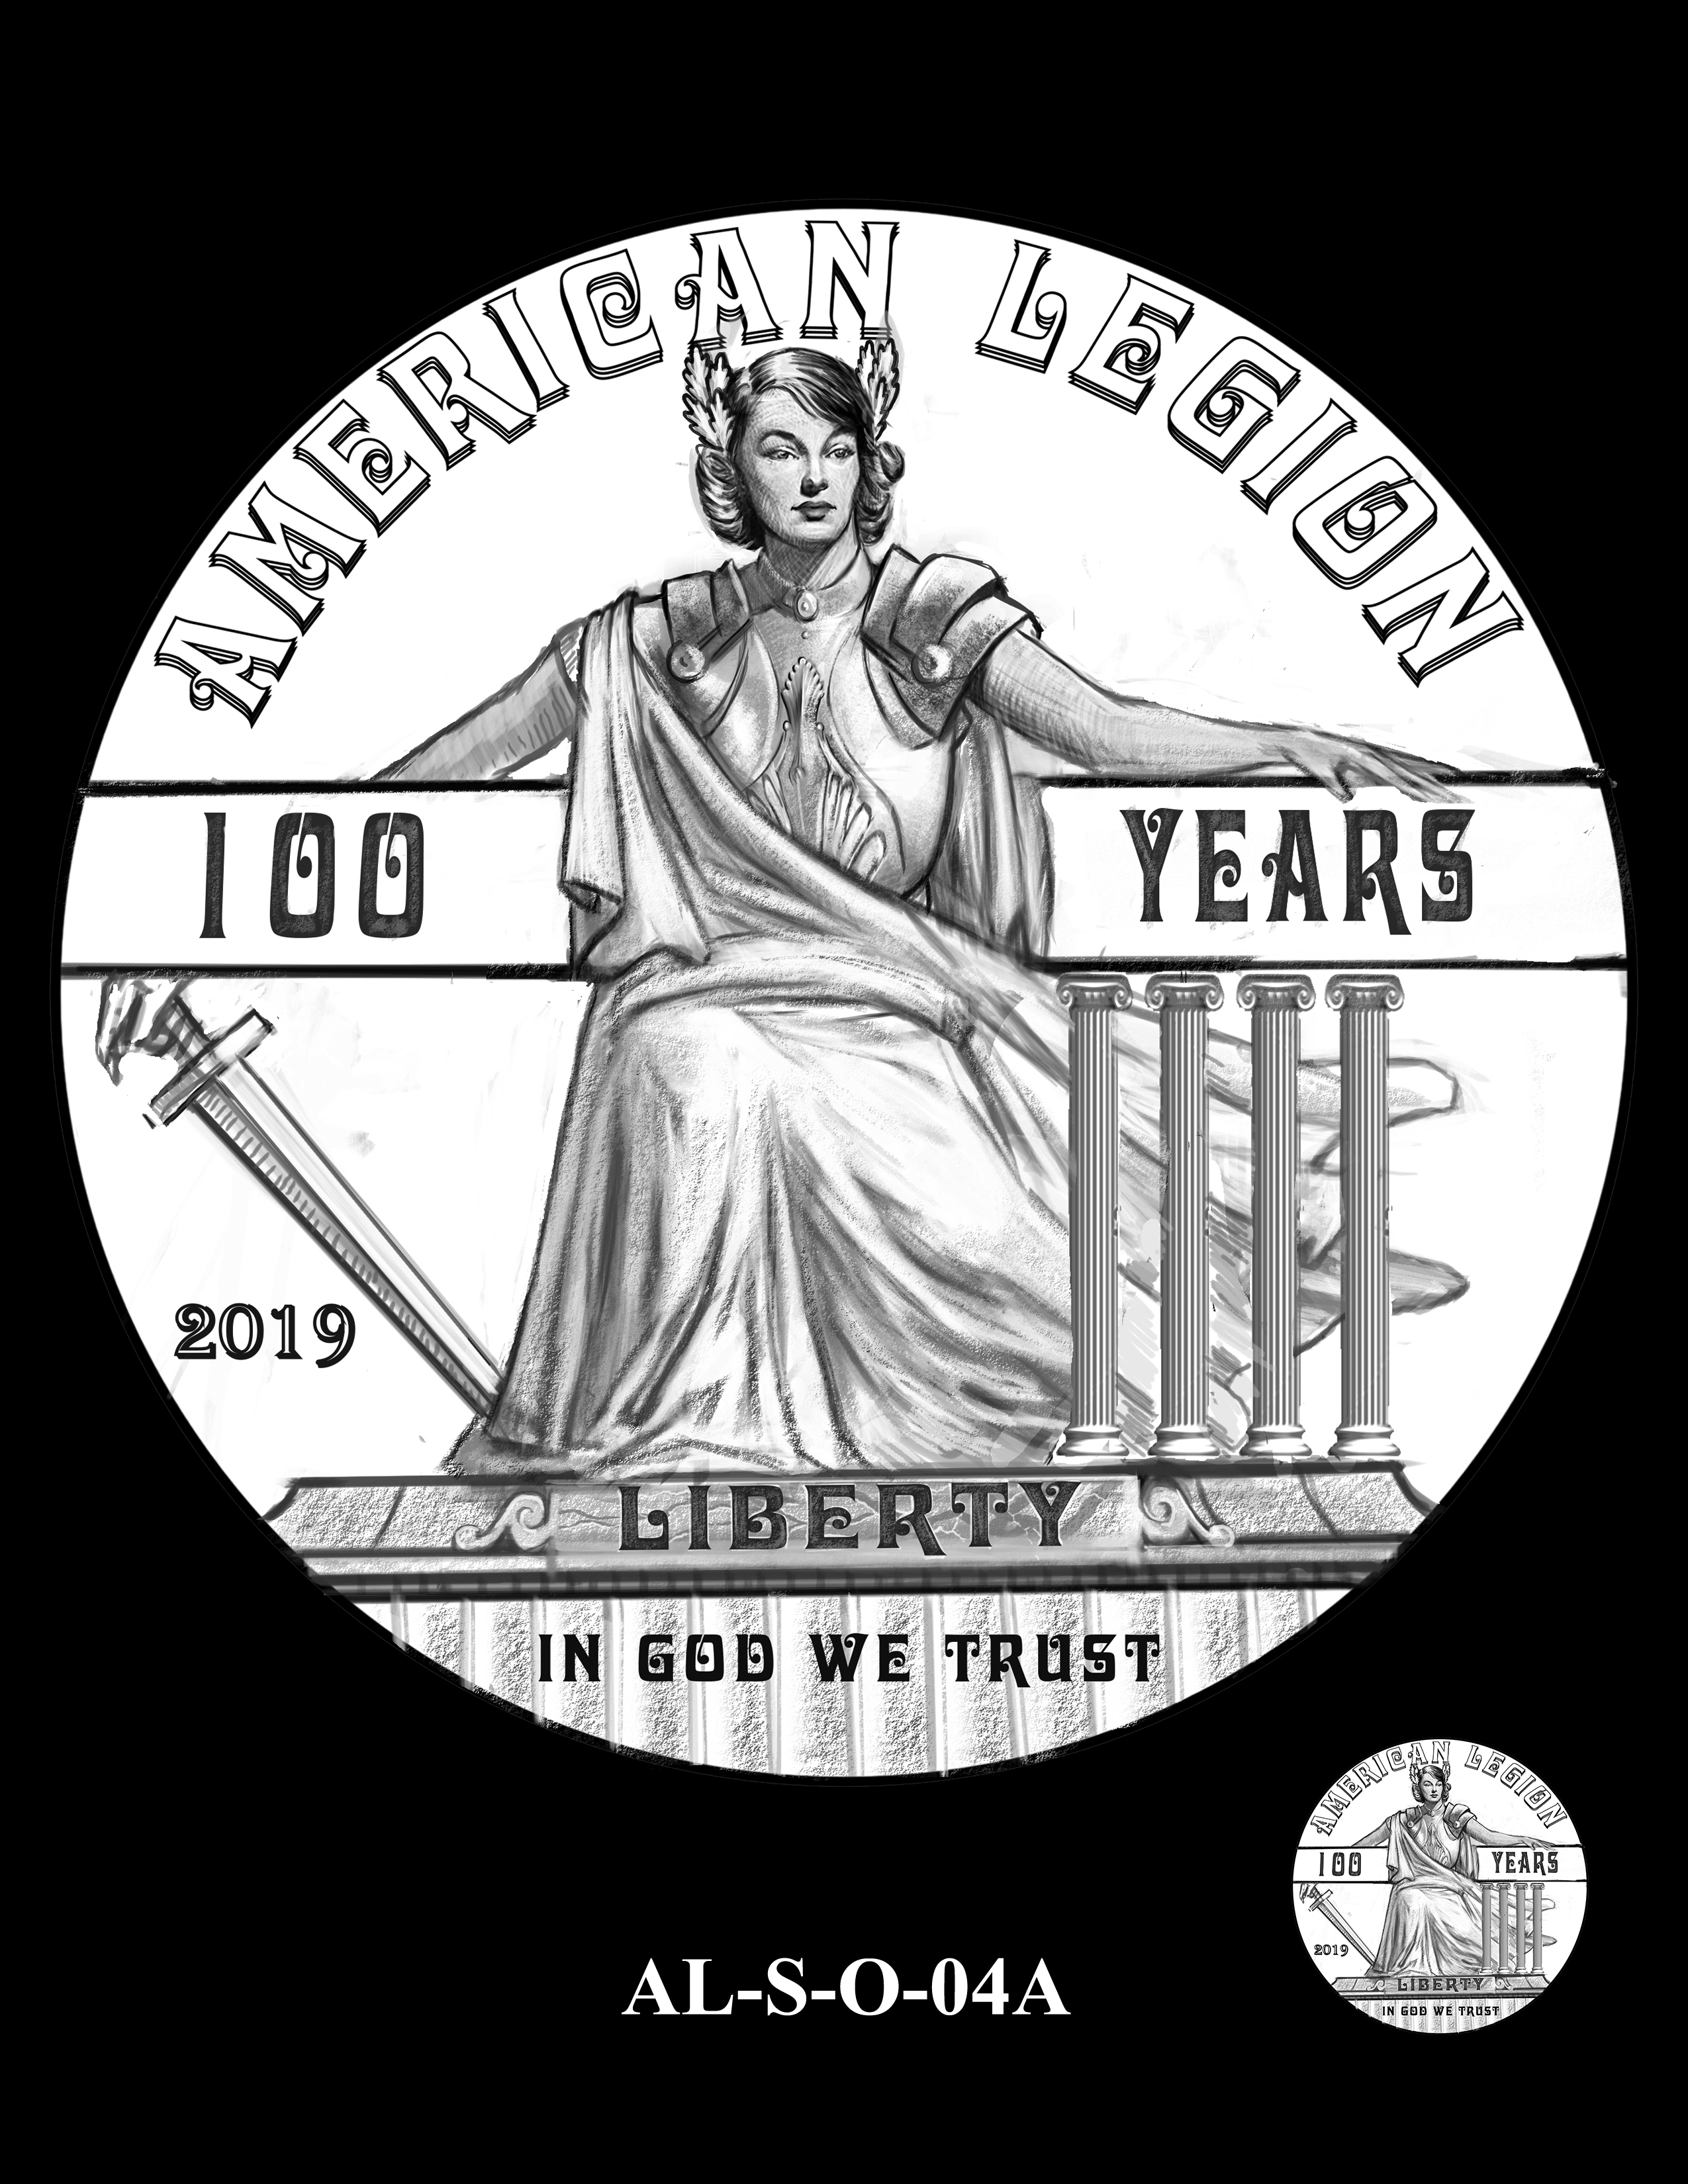 AL-S-O-04A -- 2019 American Legion 100th Anniversary Commemorative Coin Program - Silver Obverse